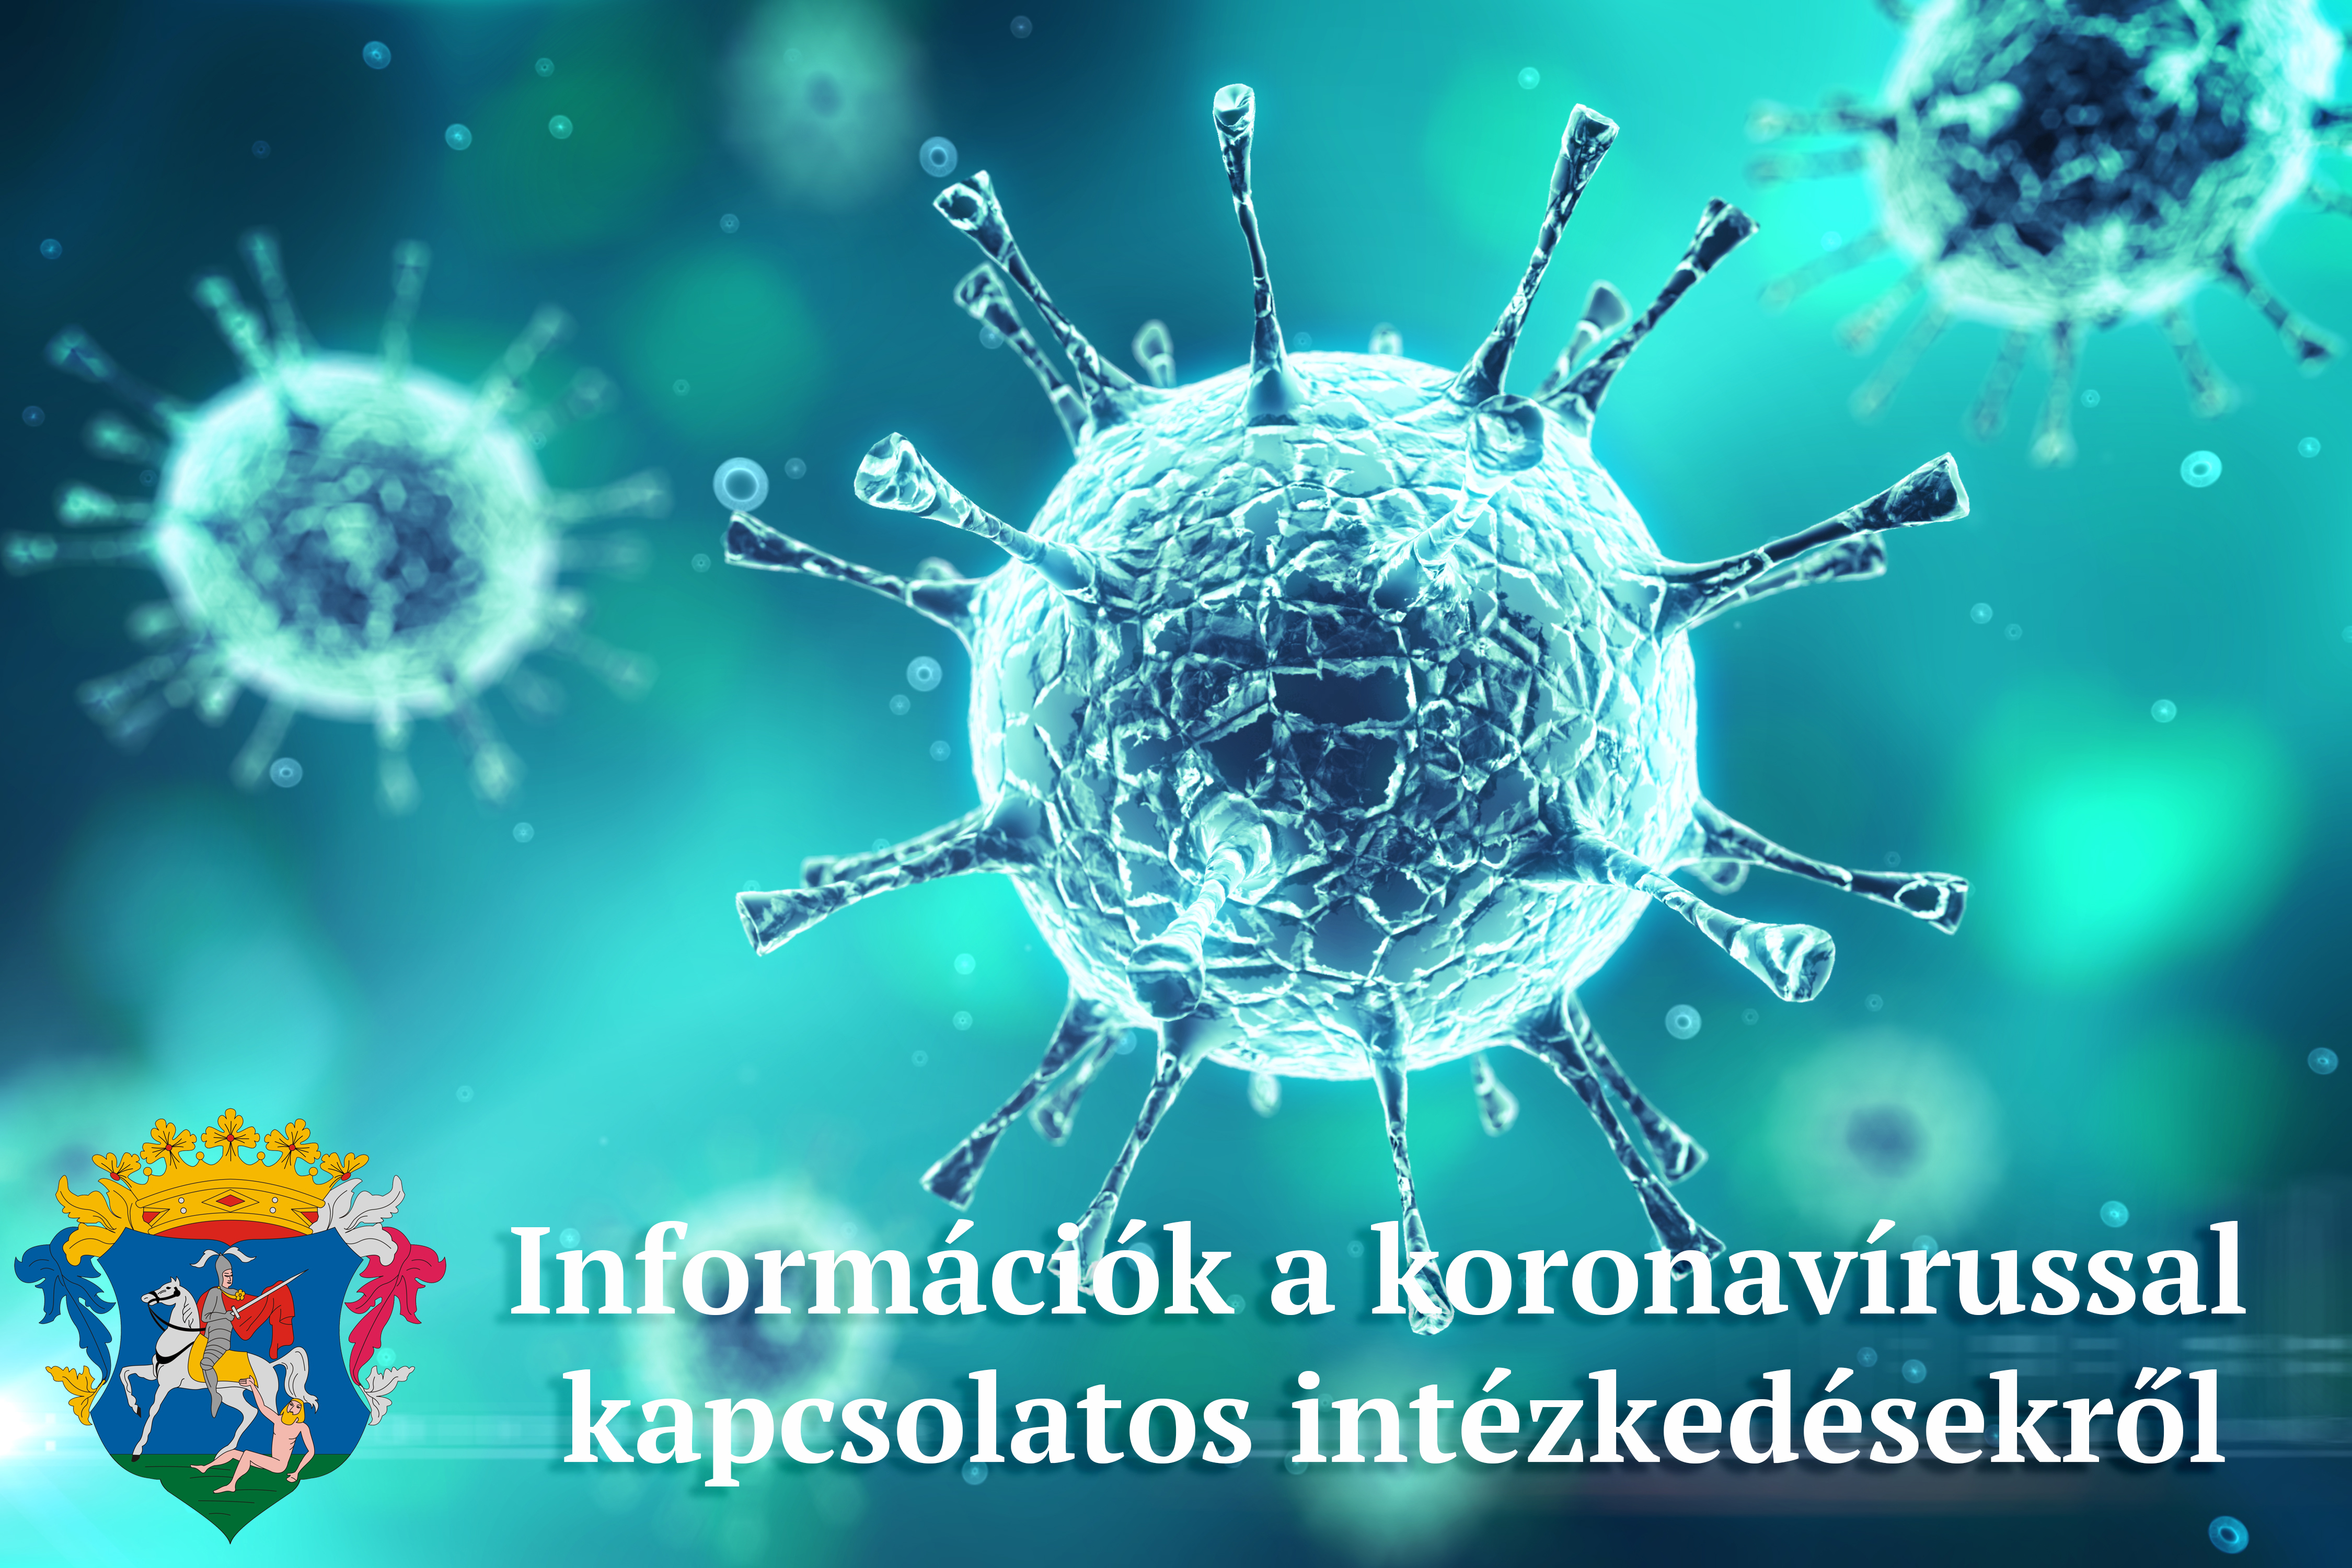 Koronavírussal kapcsolatos intézkedések, döntések 2021. április 7 - 16 között